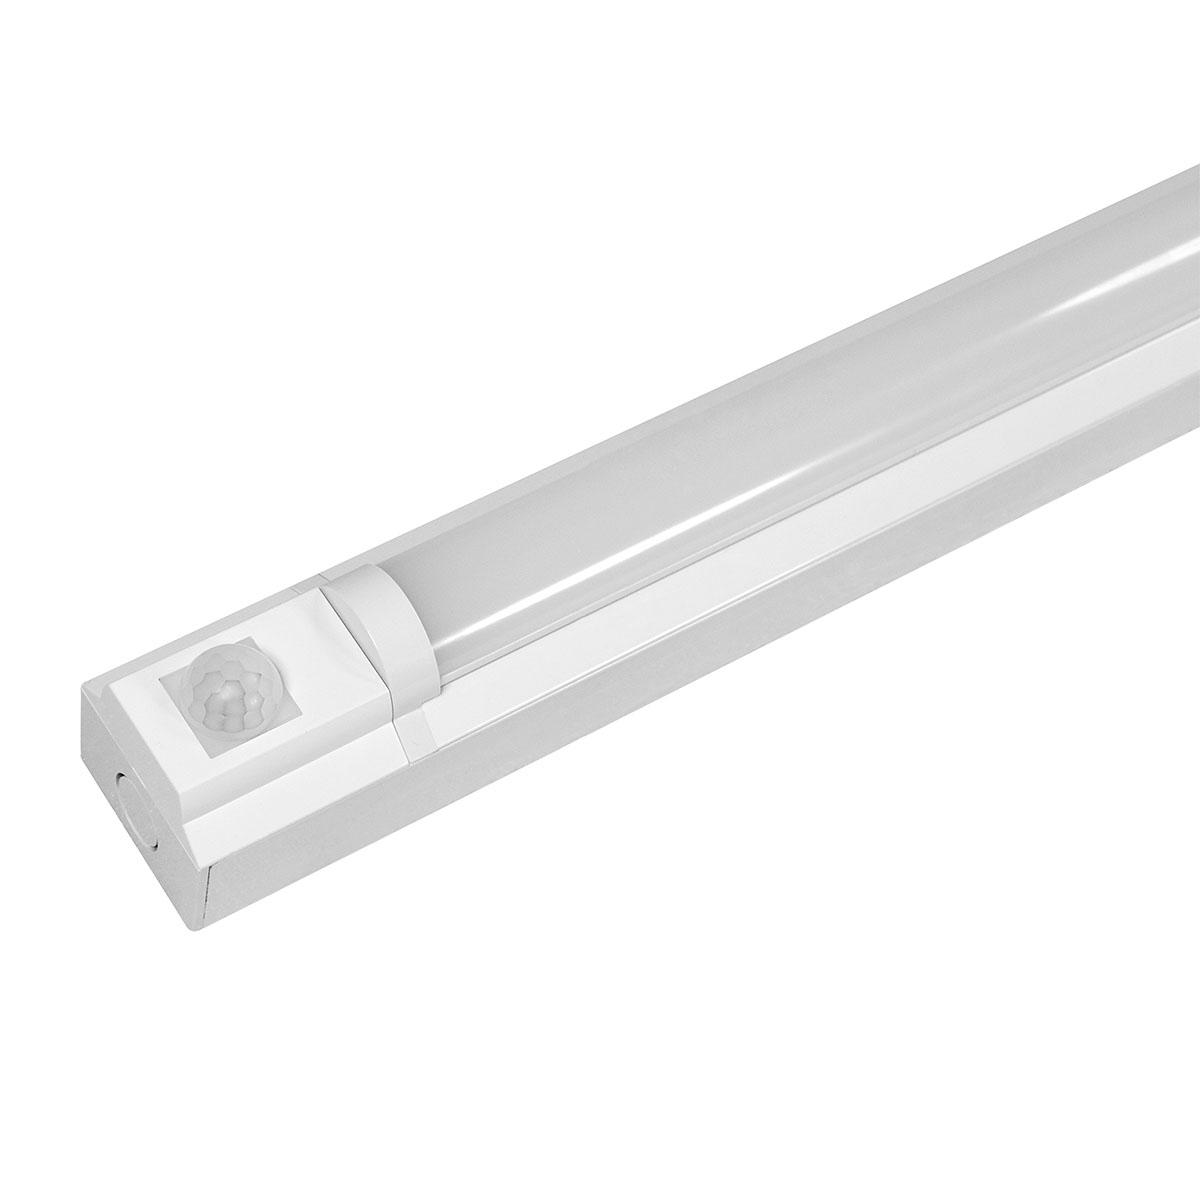 LED Lichtleiste CCT 120lm/w IP20 mit Bewegungsmelder - Ausführung: 150cm 45W